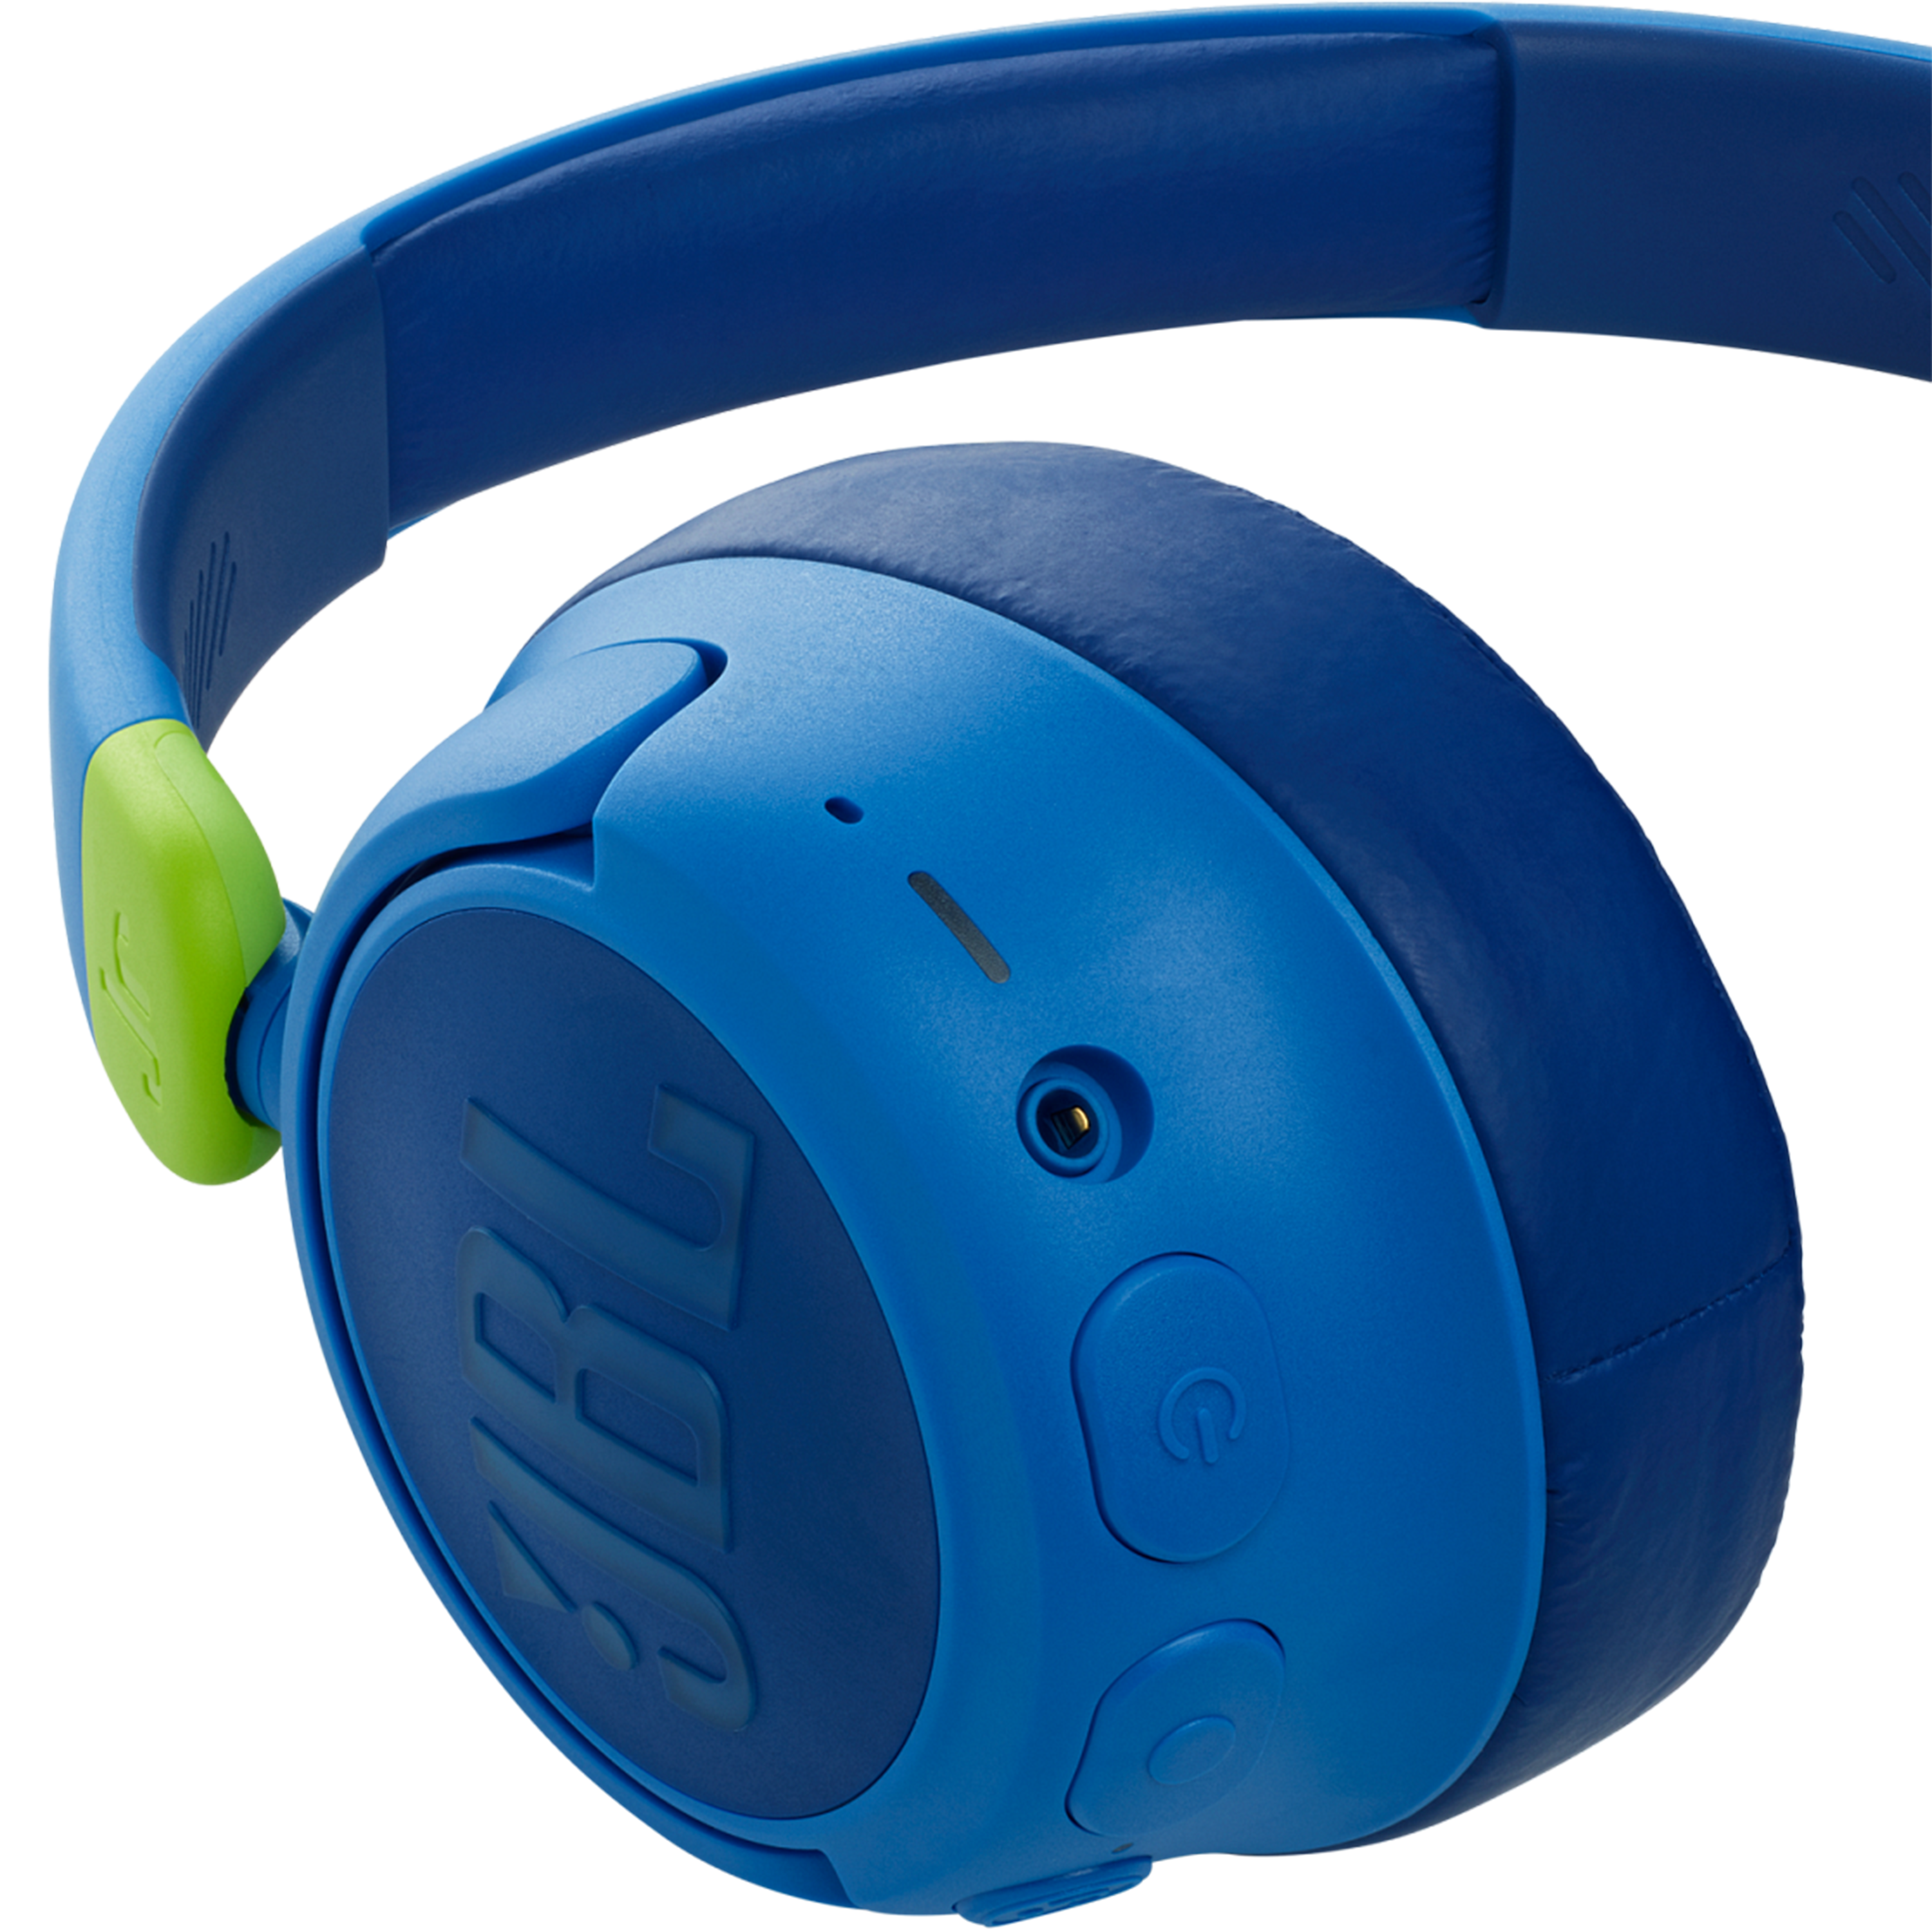 אוזניות קשת אלחוטיות עם סינון רעשים לילדים JBL JR 460NC - צבע כחול שנה אחריות ע